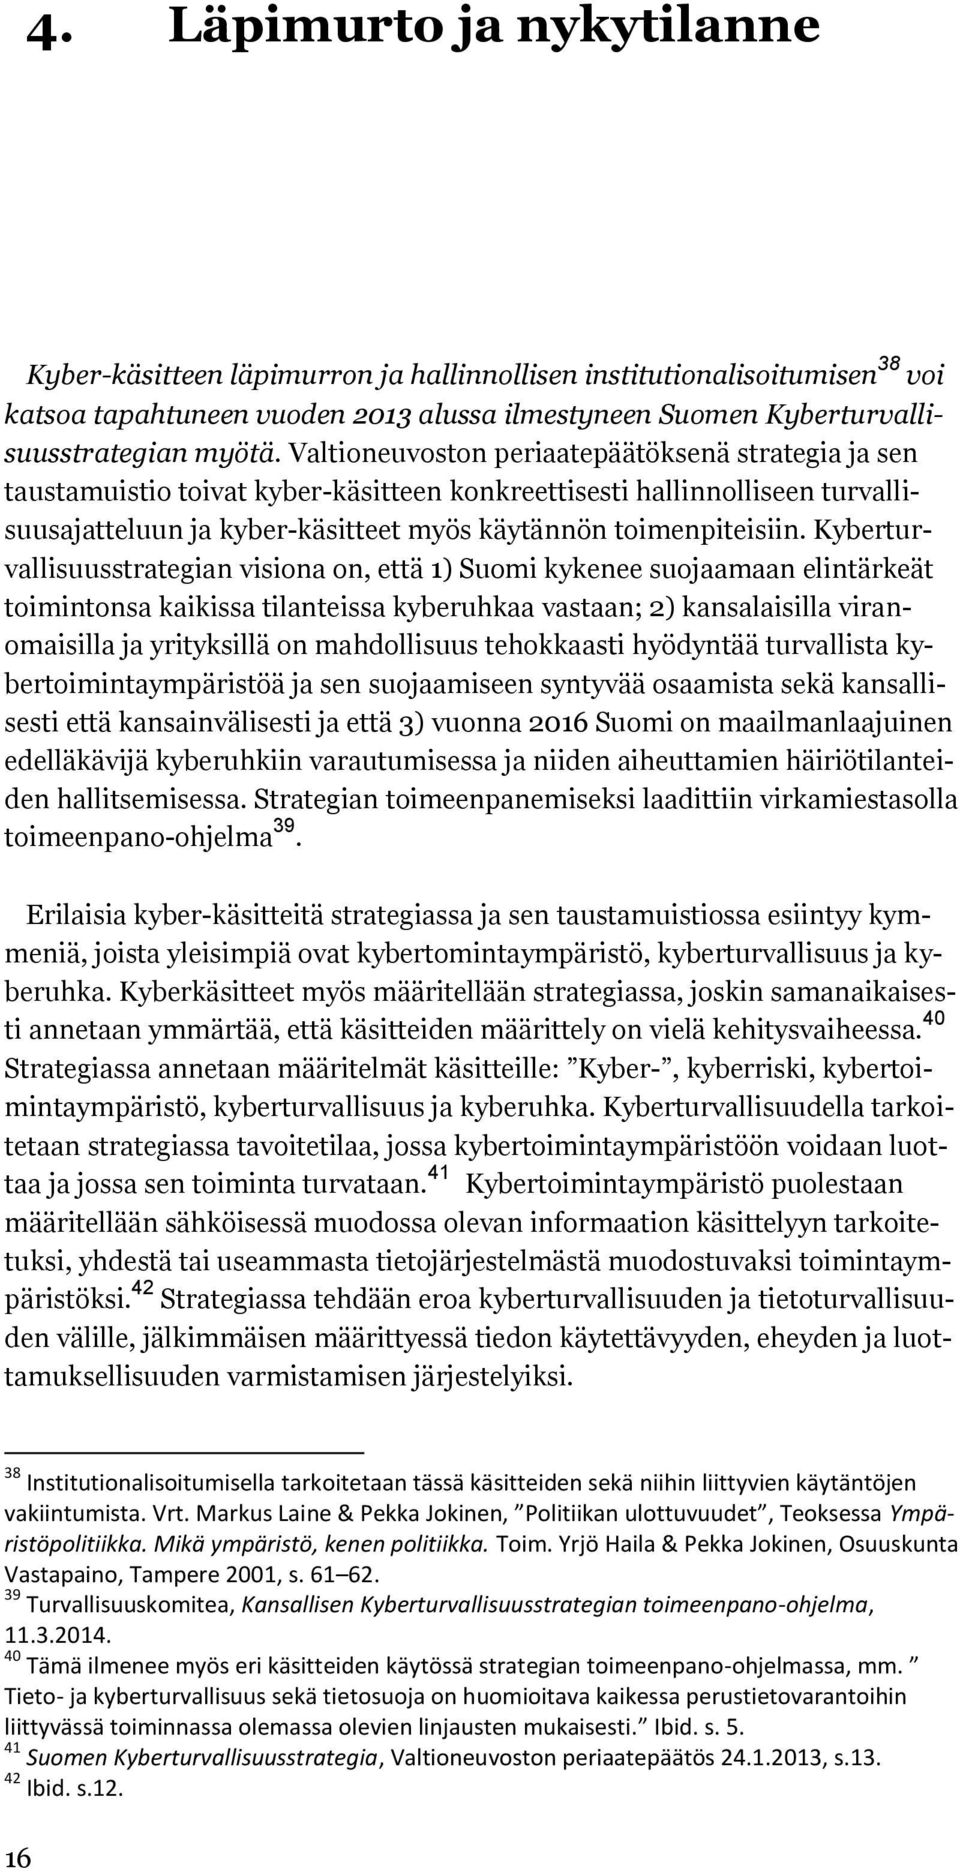 Kyberturvallisuusstrategian visiona on, että 1) Suomi kykenee suojaamaan elintärkeät toimintonsa kaikissa tilanteissa kyberuhkaa vastaan; 2) kansalaisilla viranomaisilla ja yrityksillä on